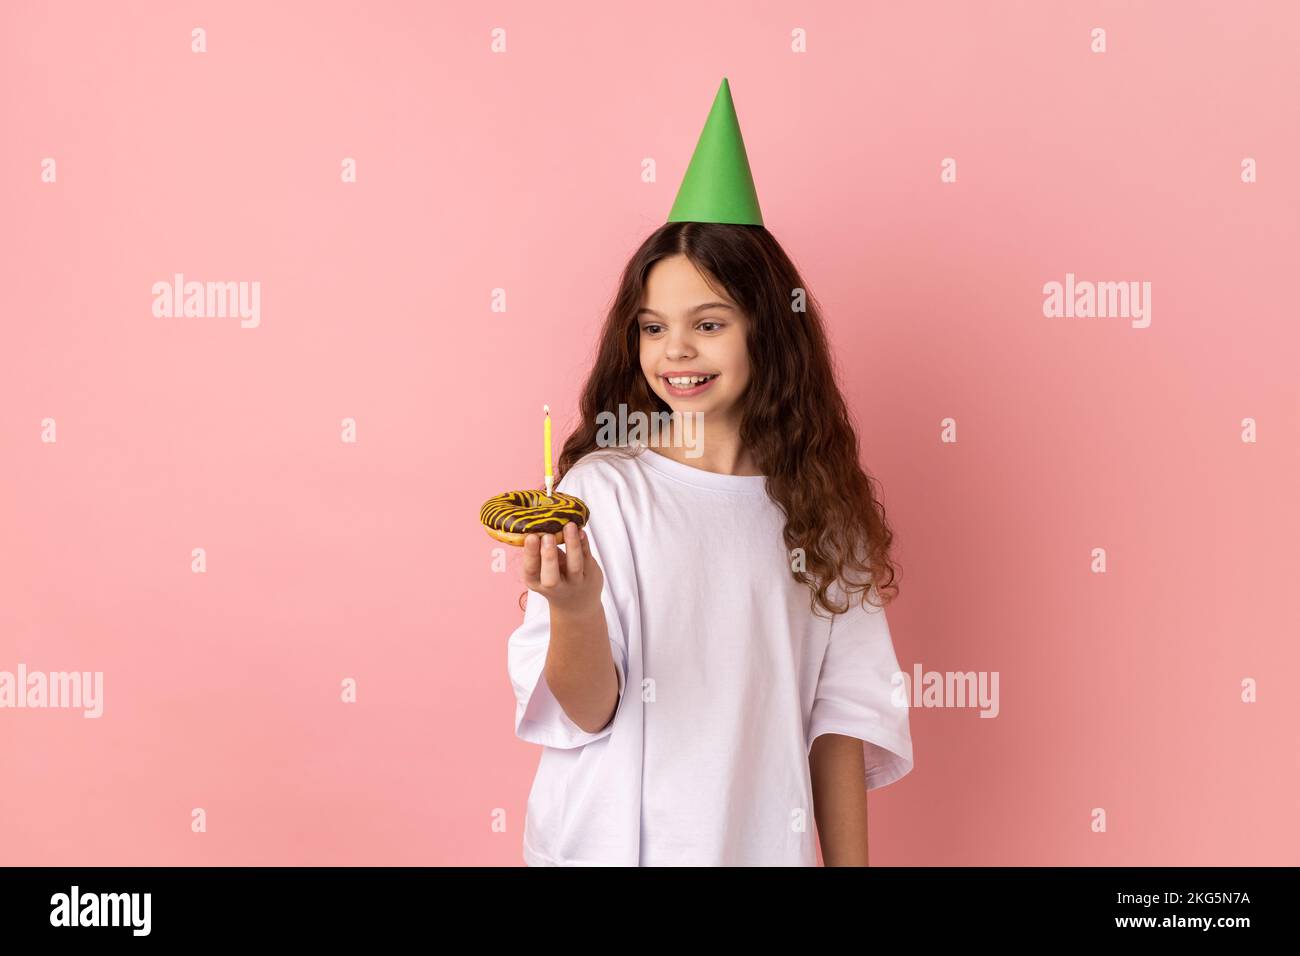 Une petite fille satisfaite en forme de cône vert sur la tête tenant un gâteau avec une bougie et regardant le dessert avec un sourire savoureux, exprimant le bonheur pur de l'enfant. Studio d'intérieur isolé sur fond rose. Banque D'Images